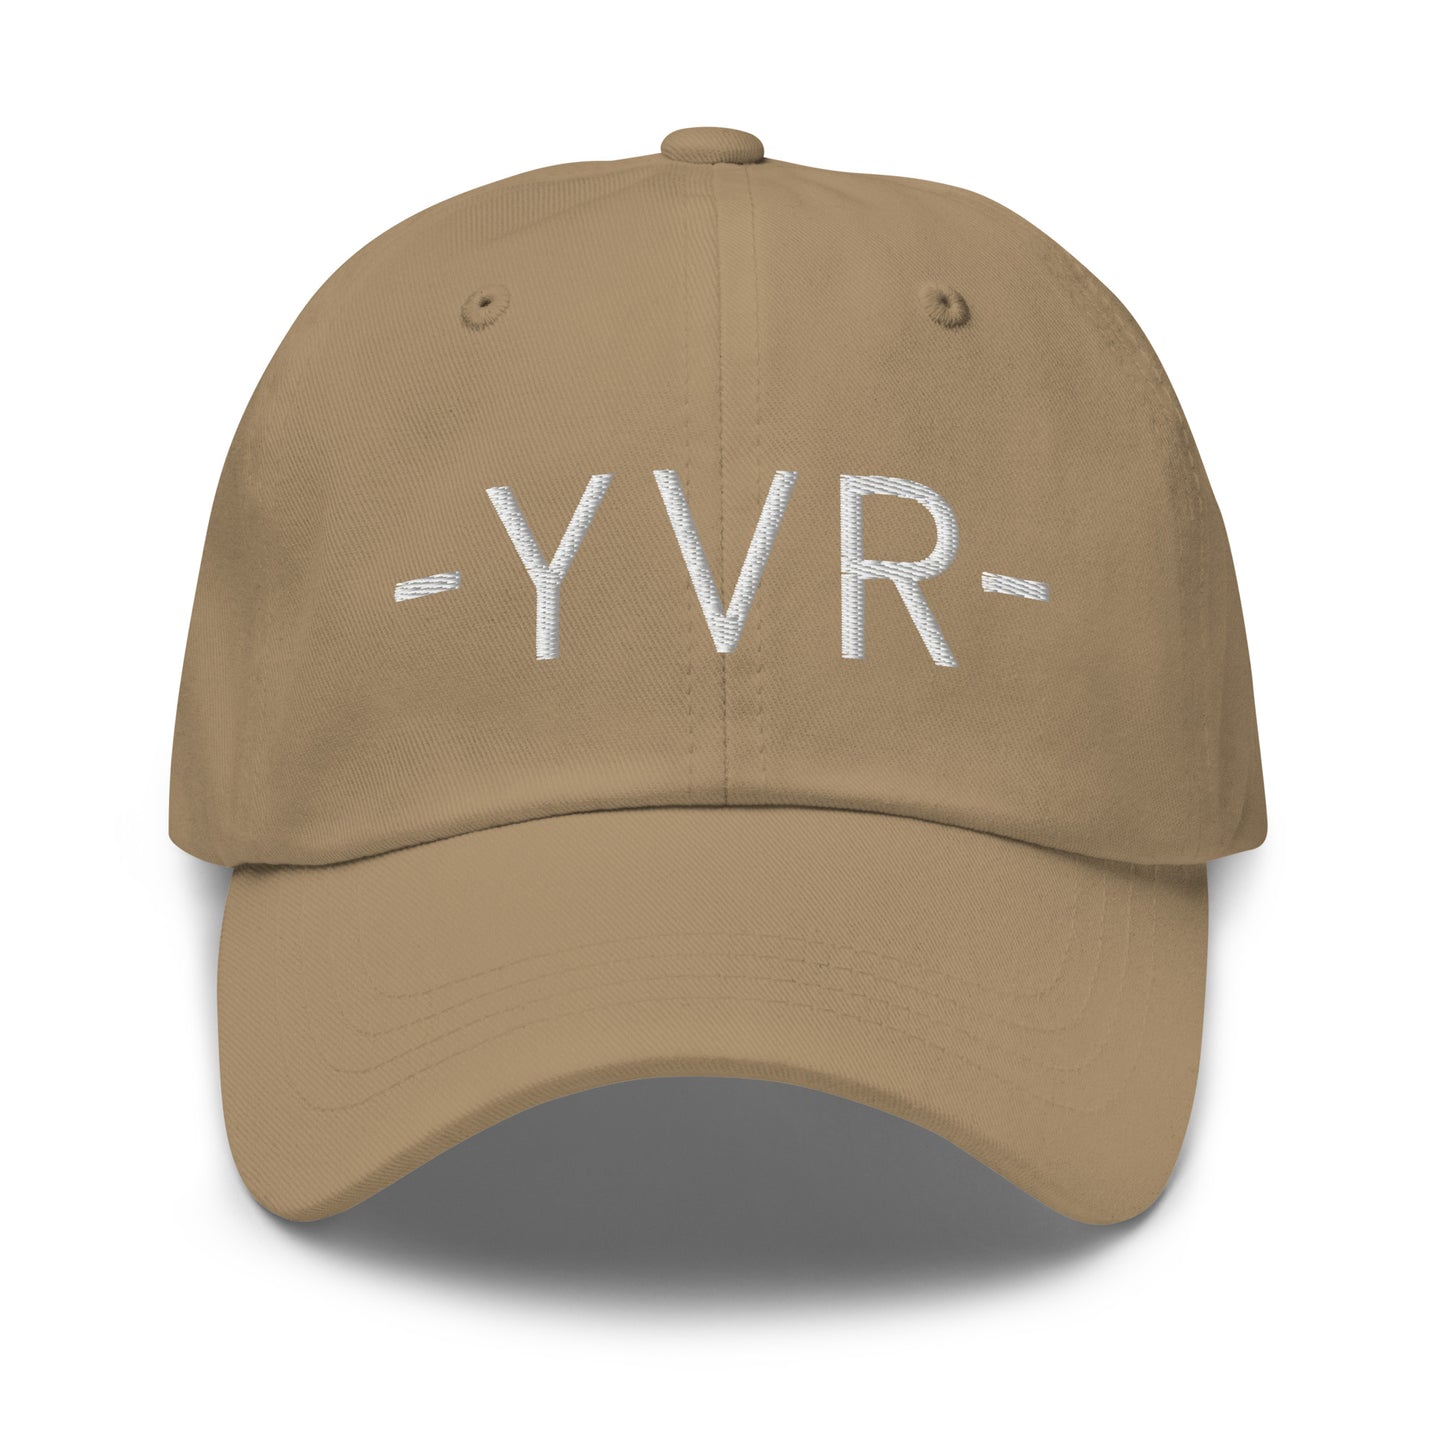 Souvenir Baseball Cap - White • YVR Vancouver • YHM Designs - Image 21